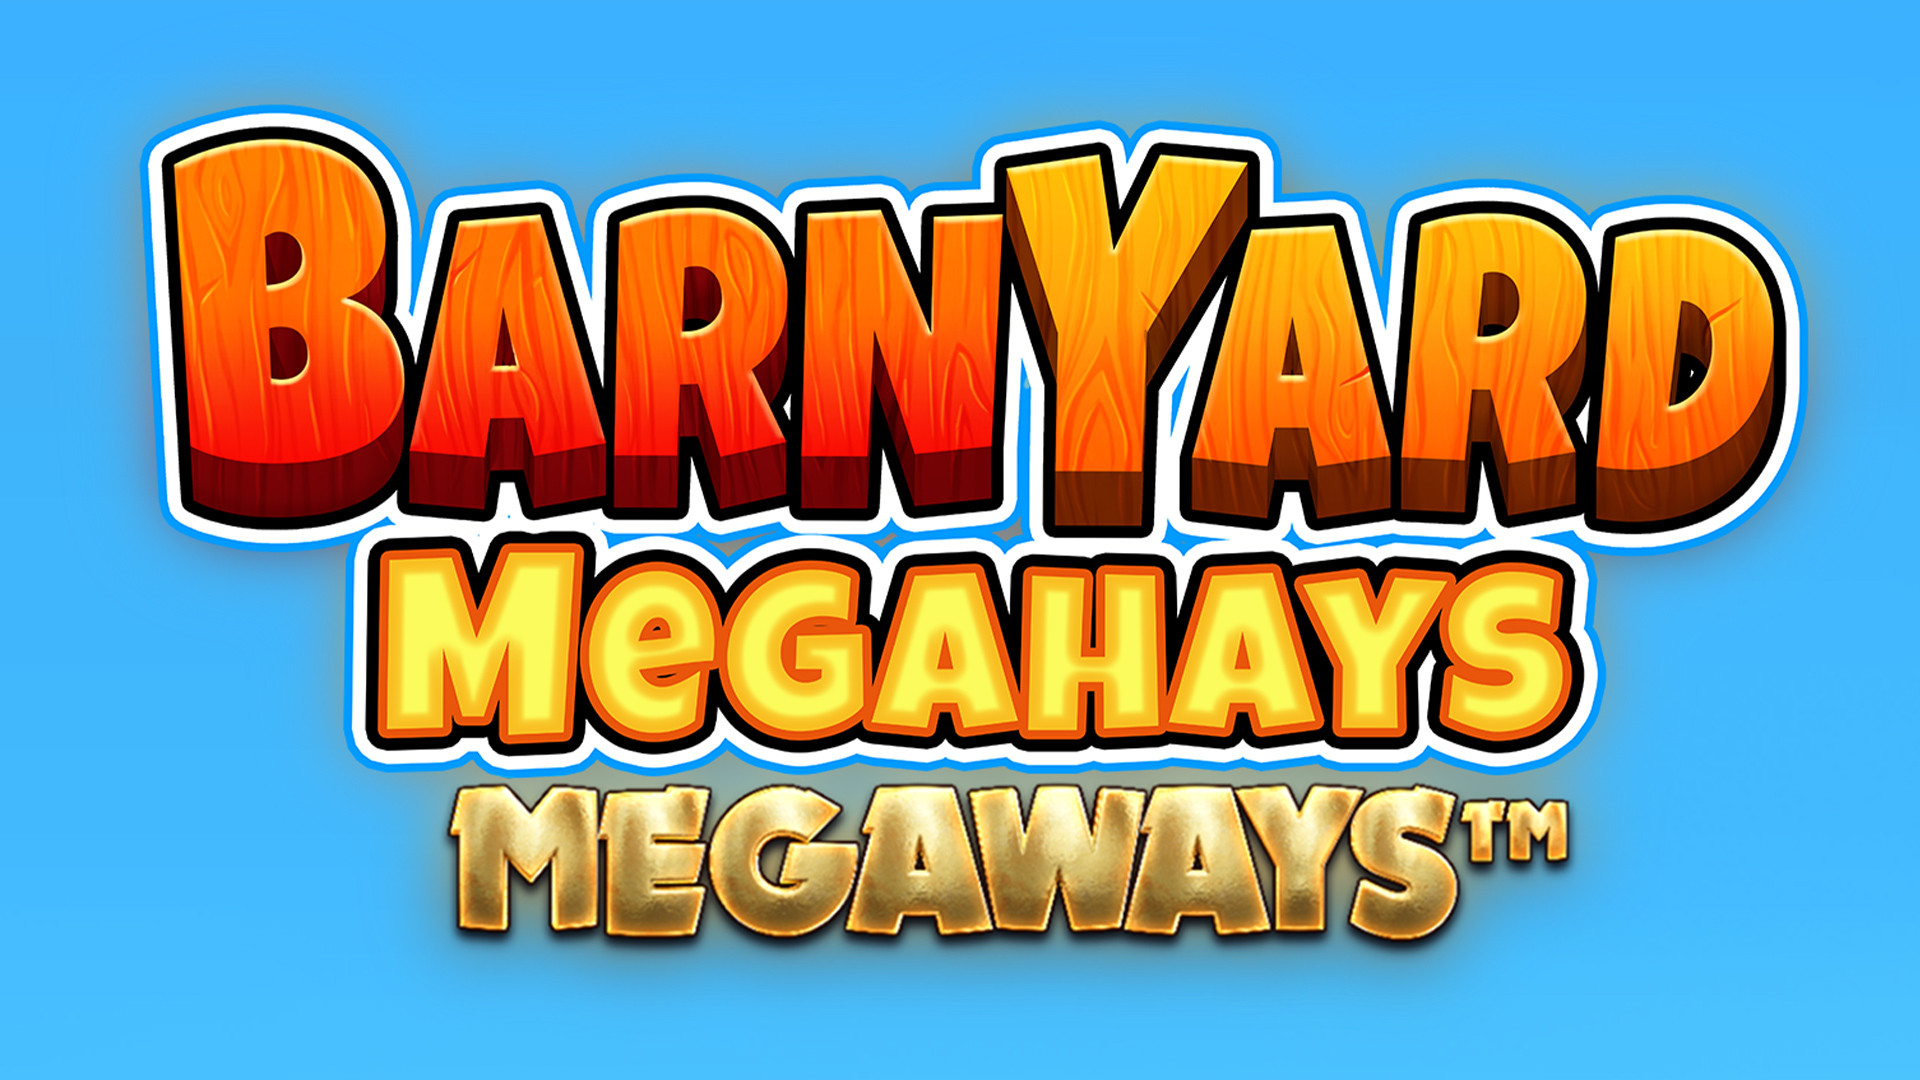 Barnyard Megahays MEGAWAYS